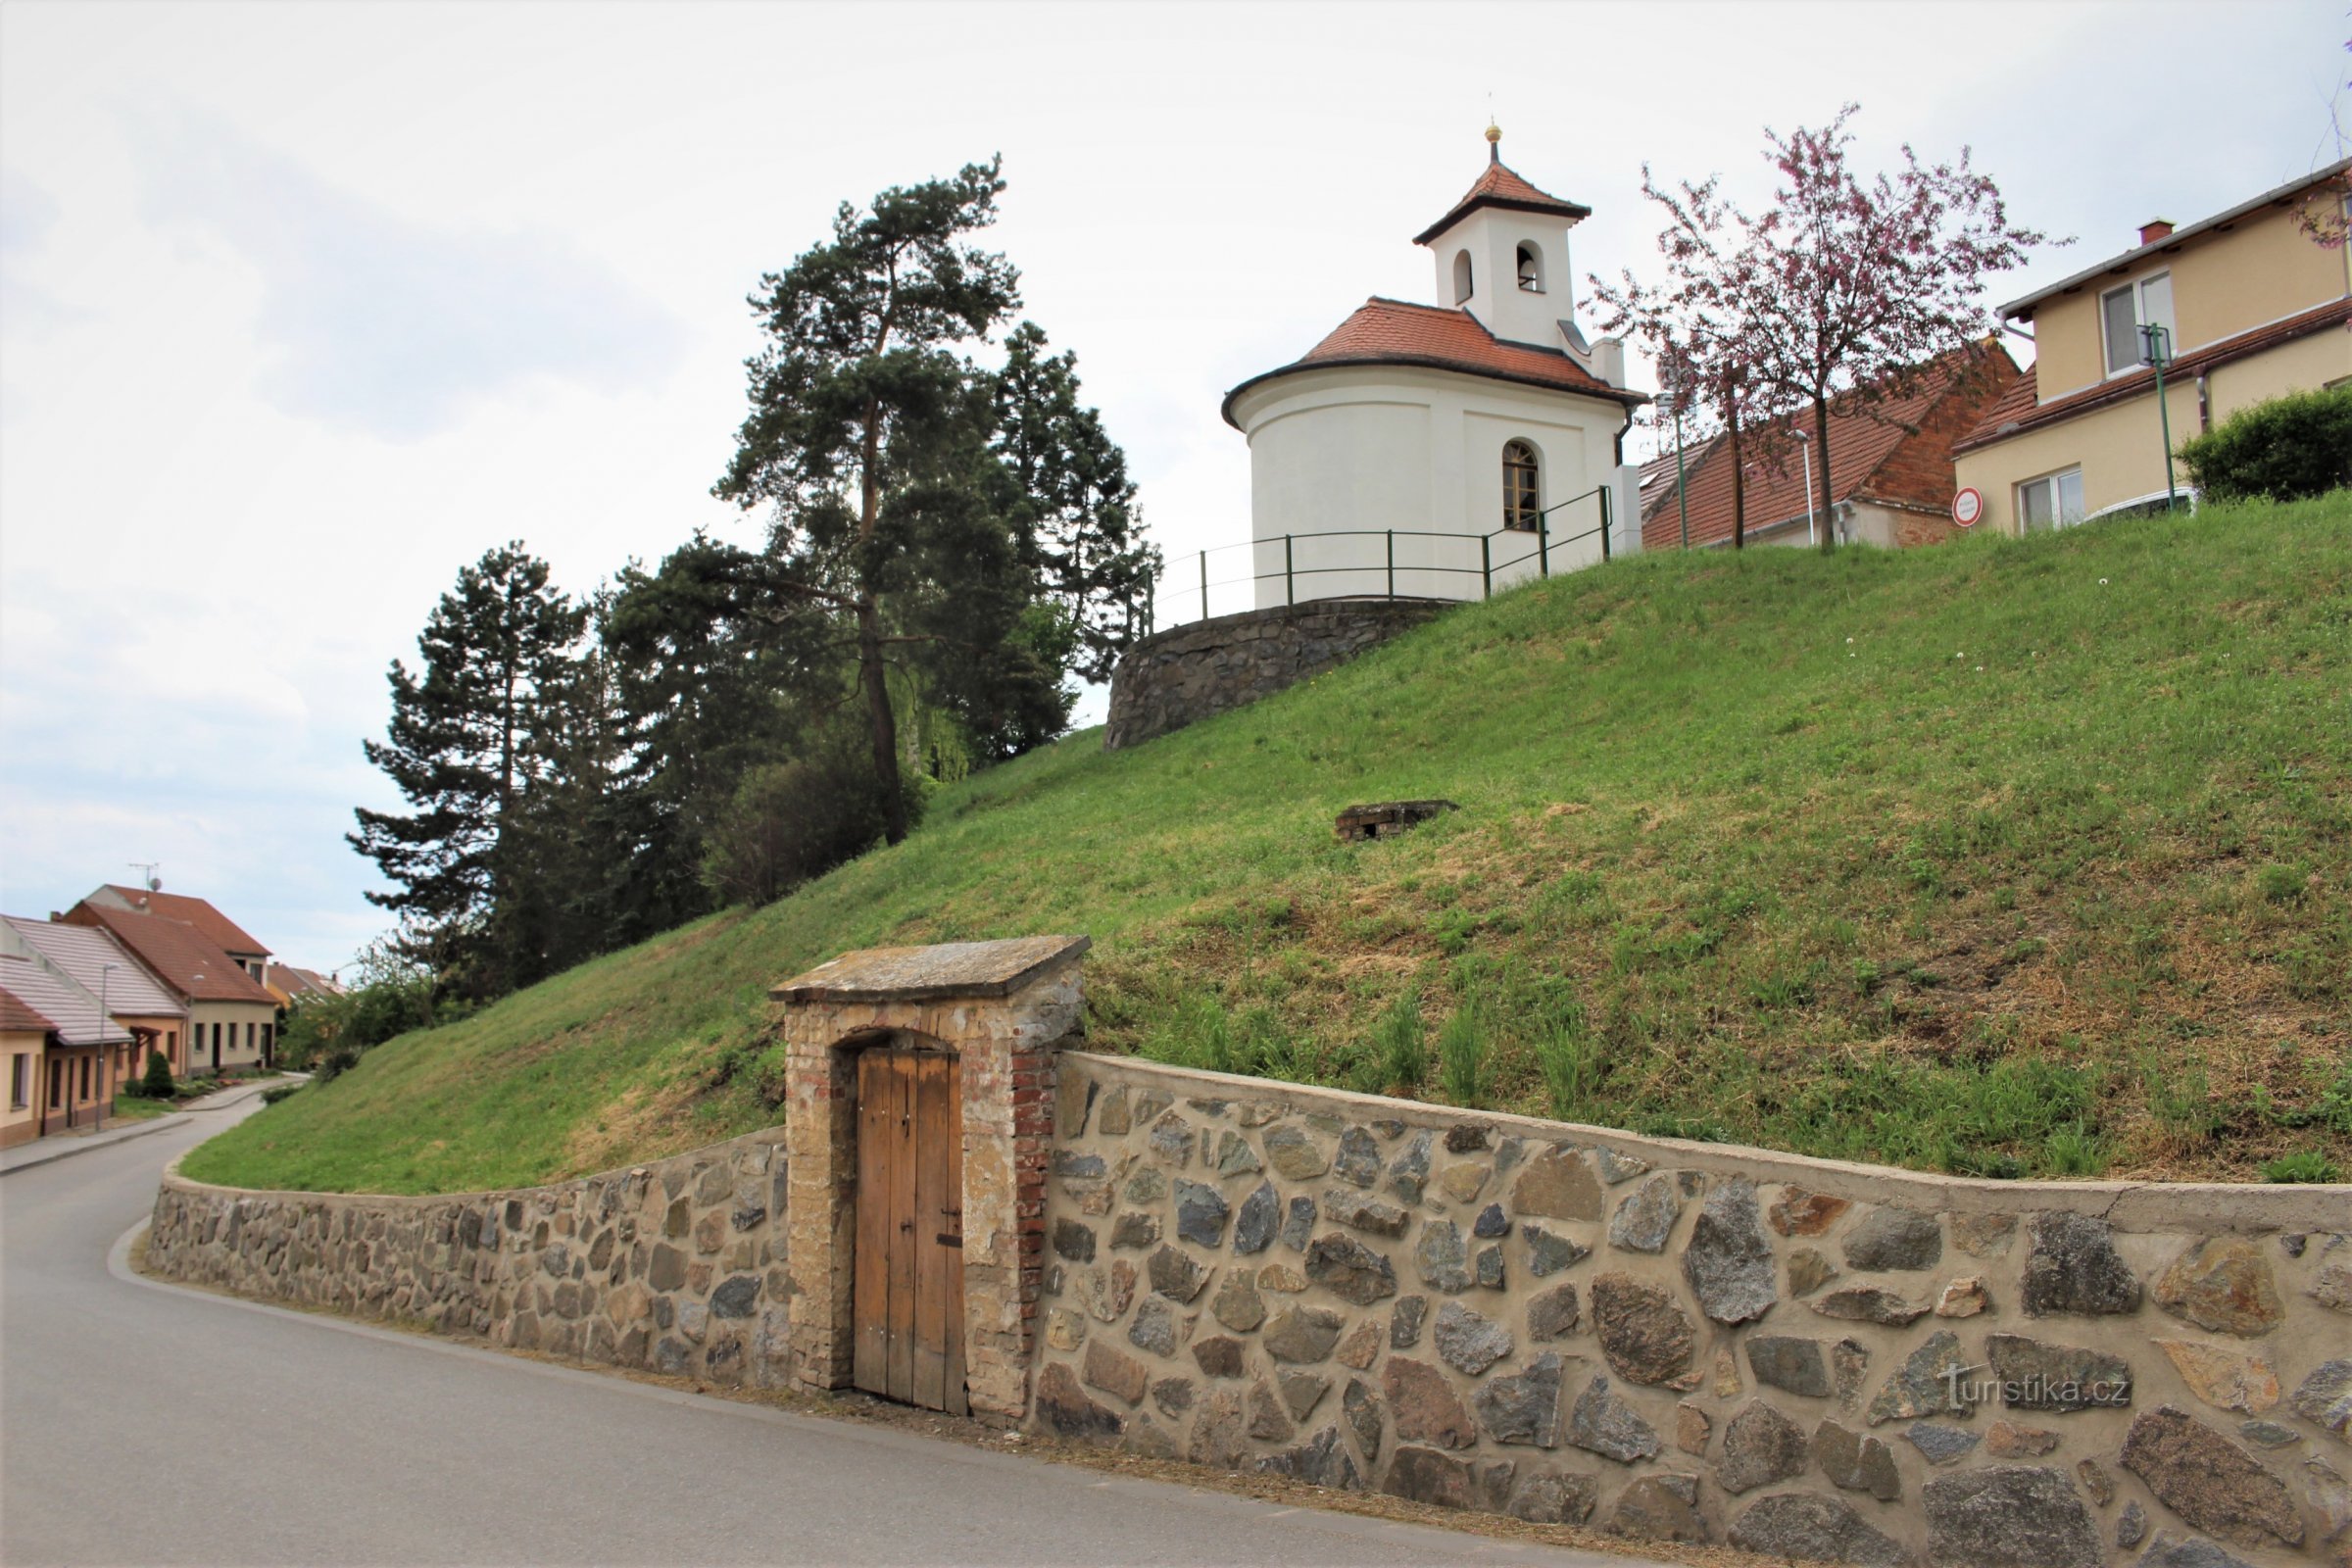 Nhà nguyện nằm ở rìa trên của sân thượng sông phía trên đường Vojkovický